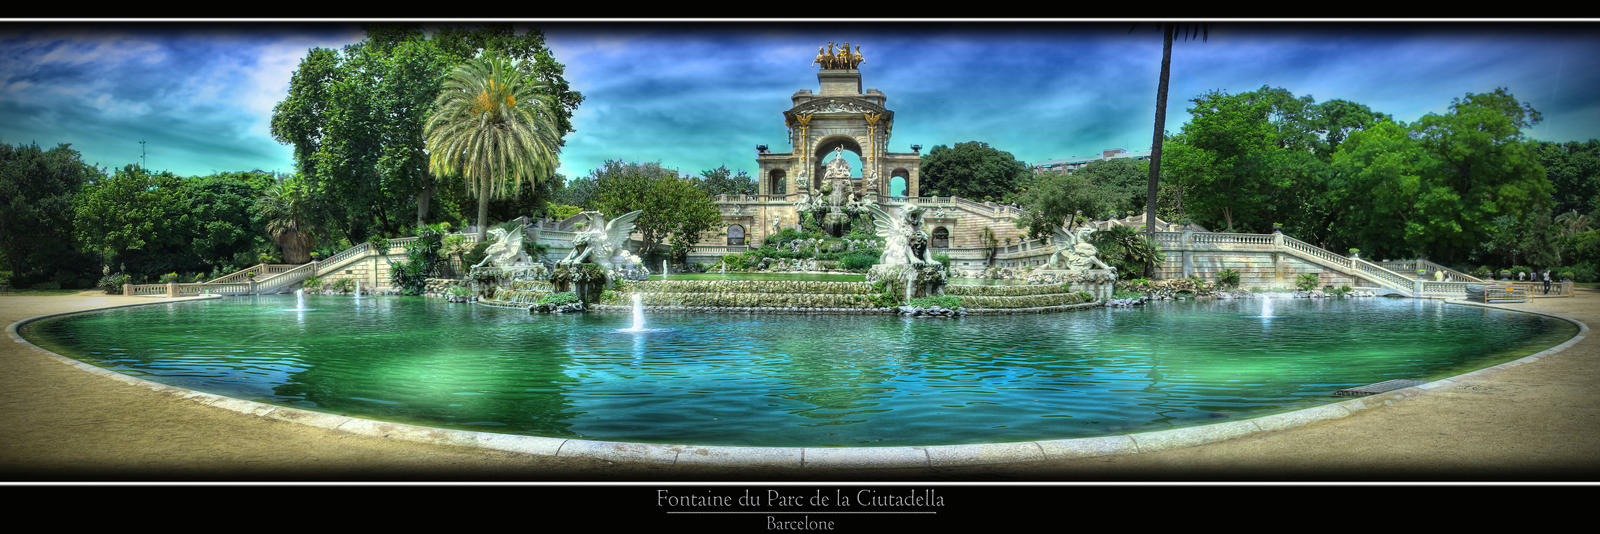 Fontaine du Parc de la Ciutadella